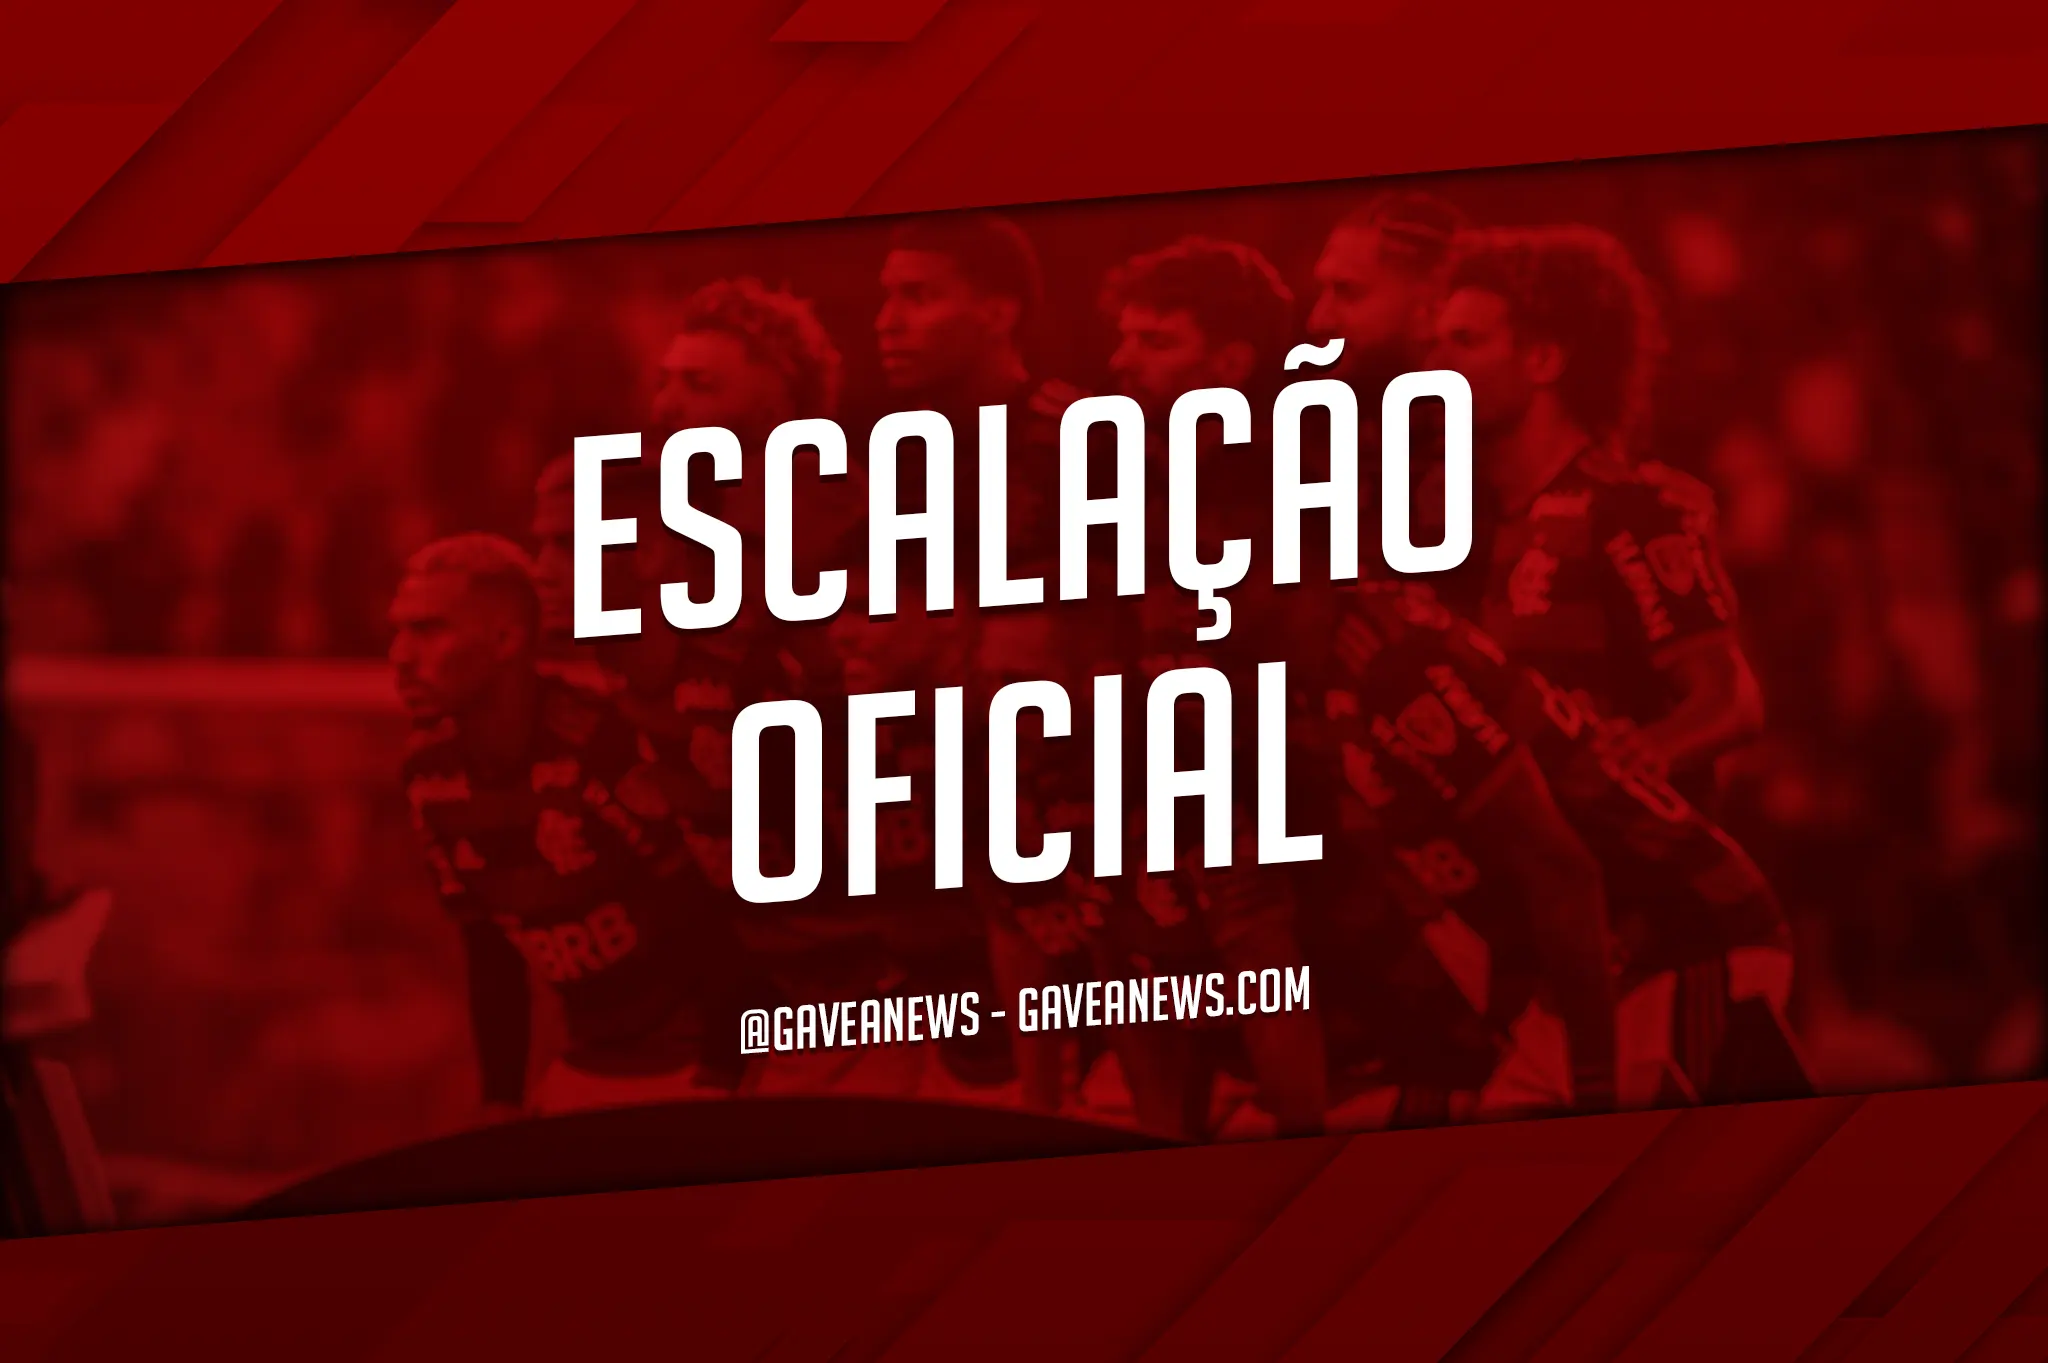 Campeonato Brasileiro  RB Bragantino x Flamengo - PRÉ E PÓS-JOGO EXCLUSIVO  FLATV 